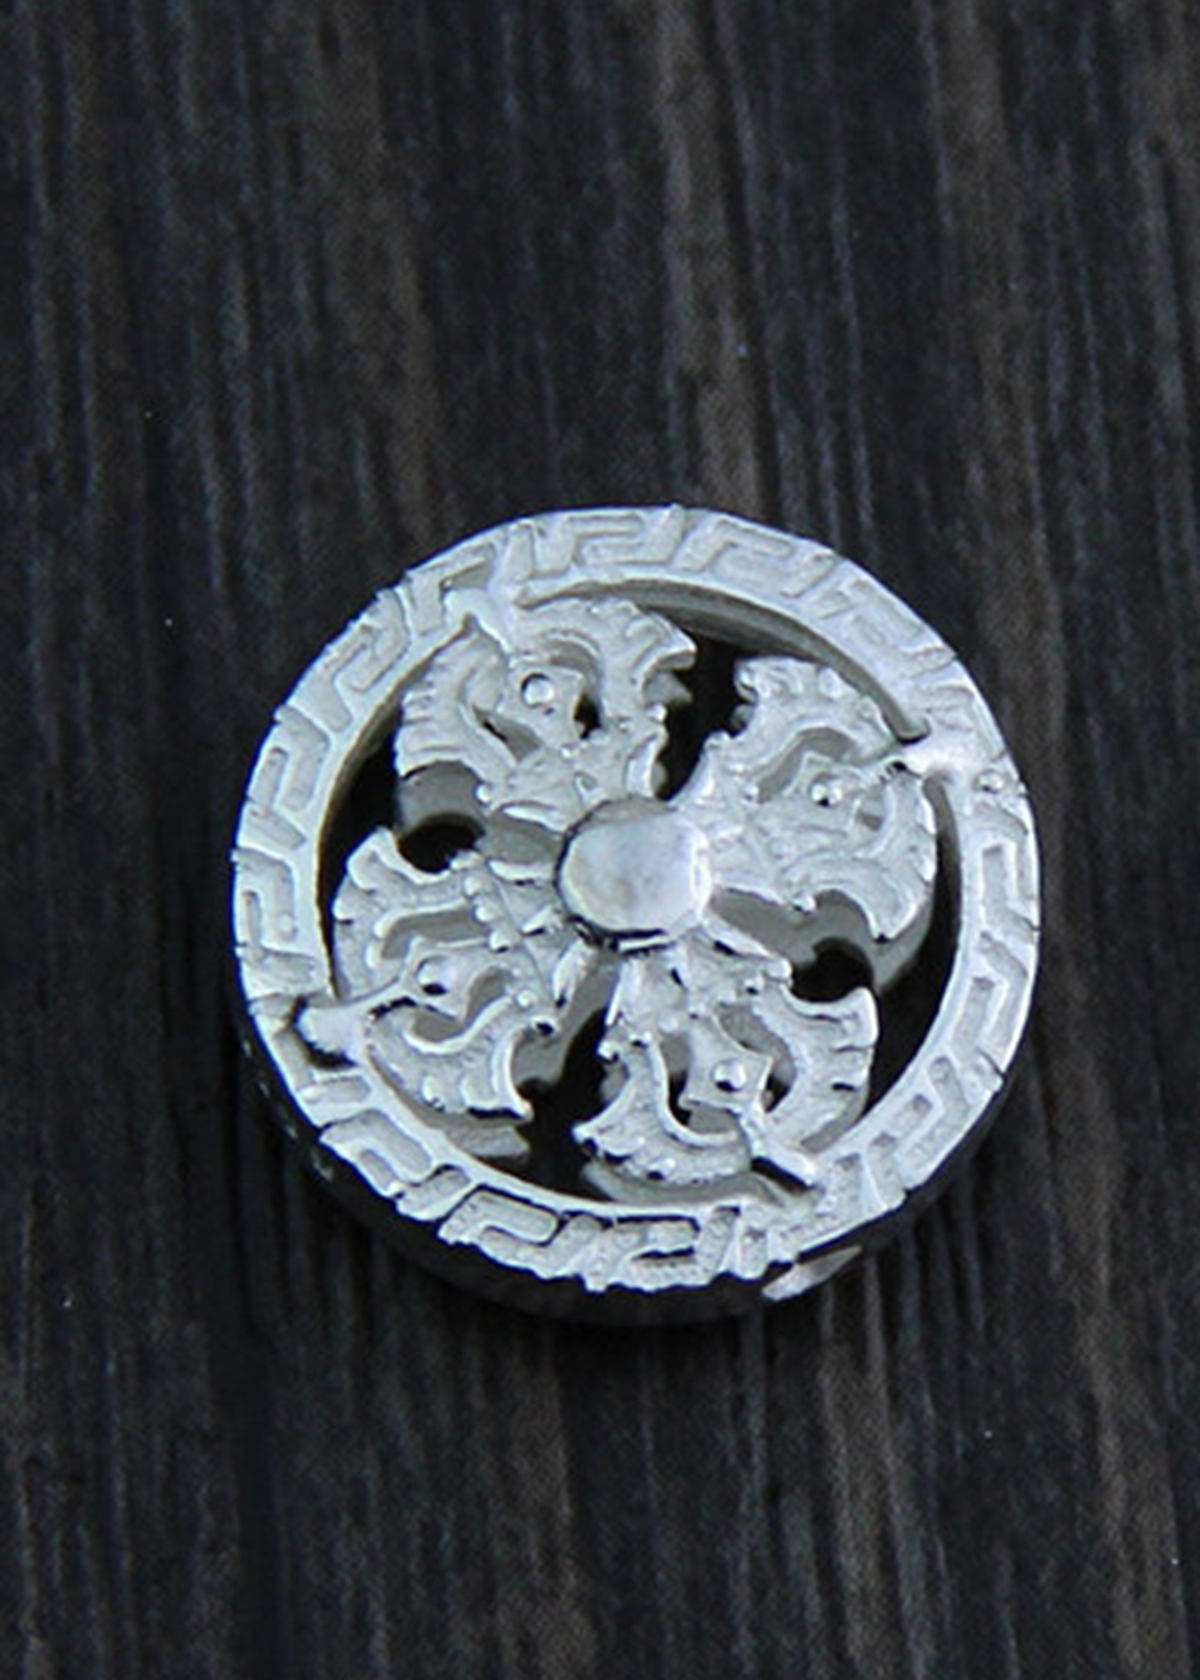 Charm bạc tròn họa tiết bánh xe pháp luân xỏ ngang - Ngọc Quý Gemstones